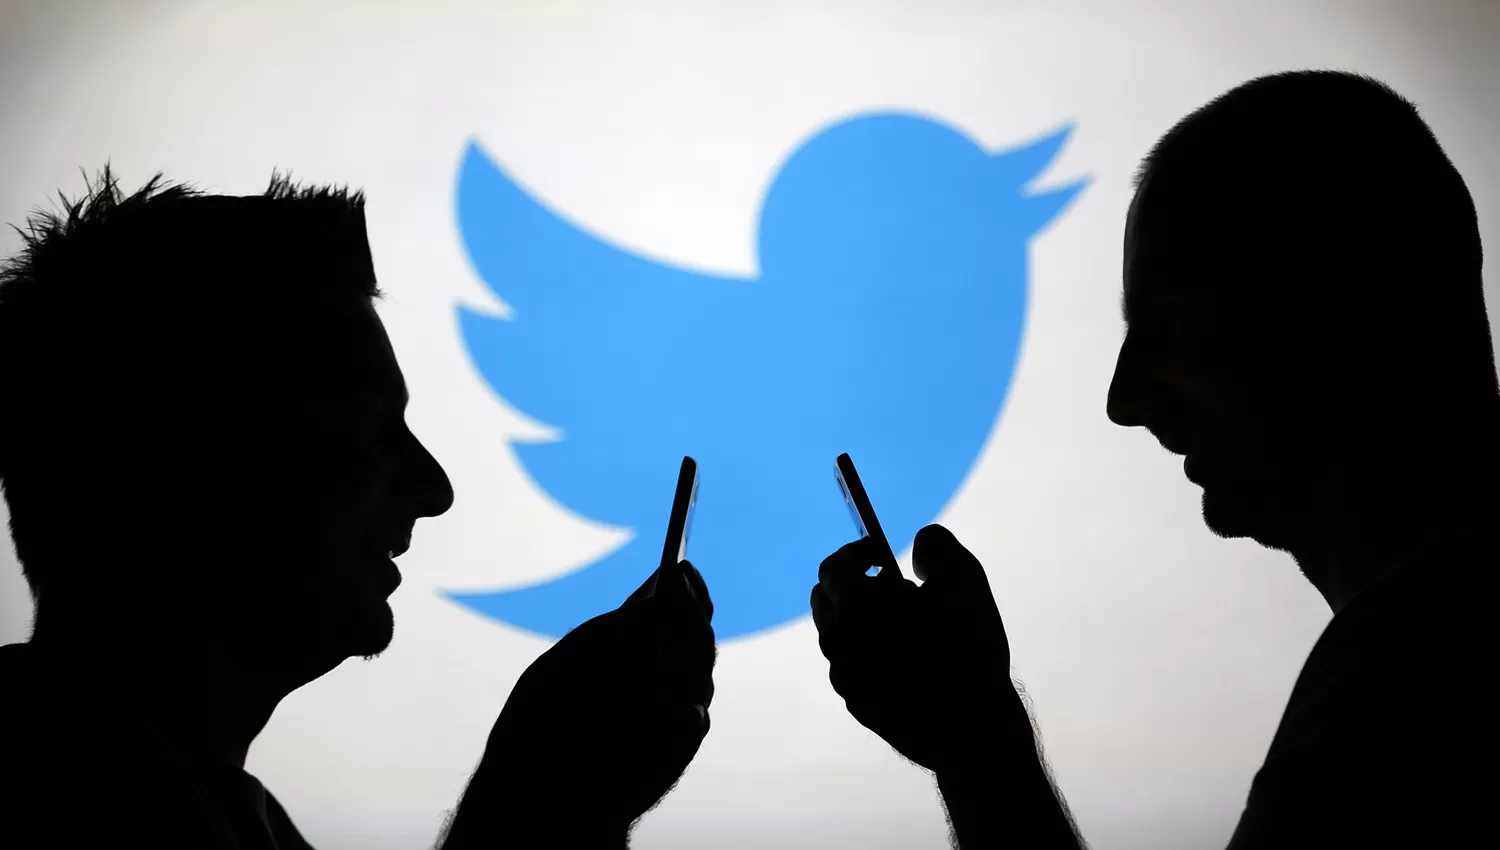 Twitter habilitó un servicio para alertar sobre conductas suicidas en la red social